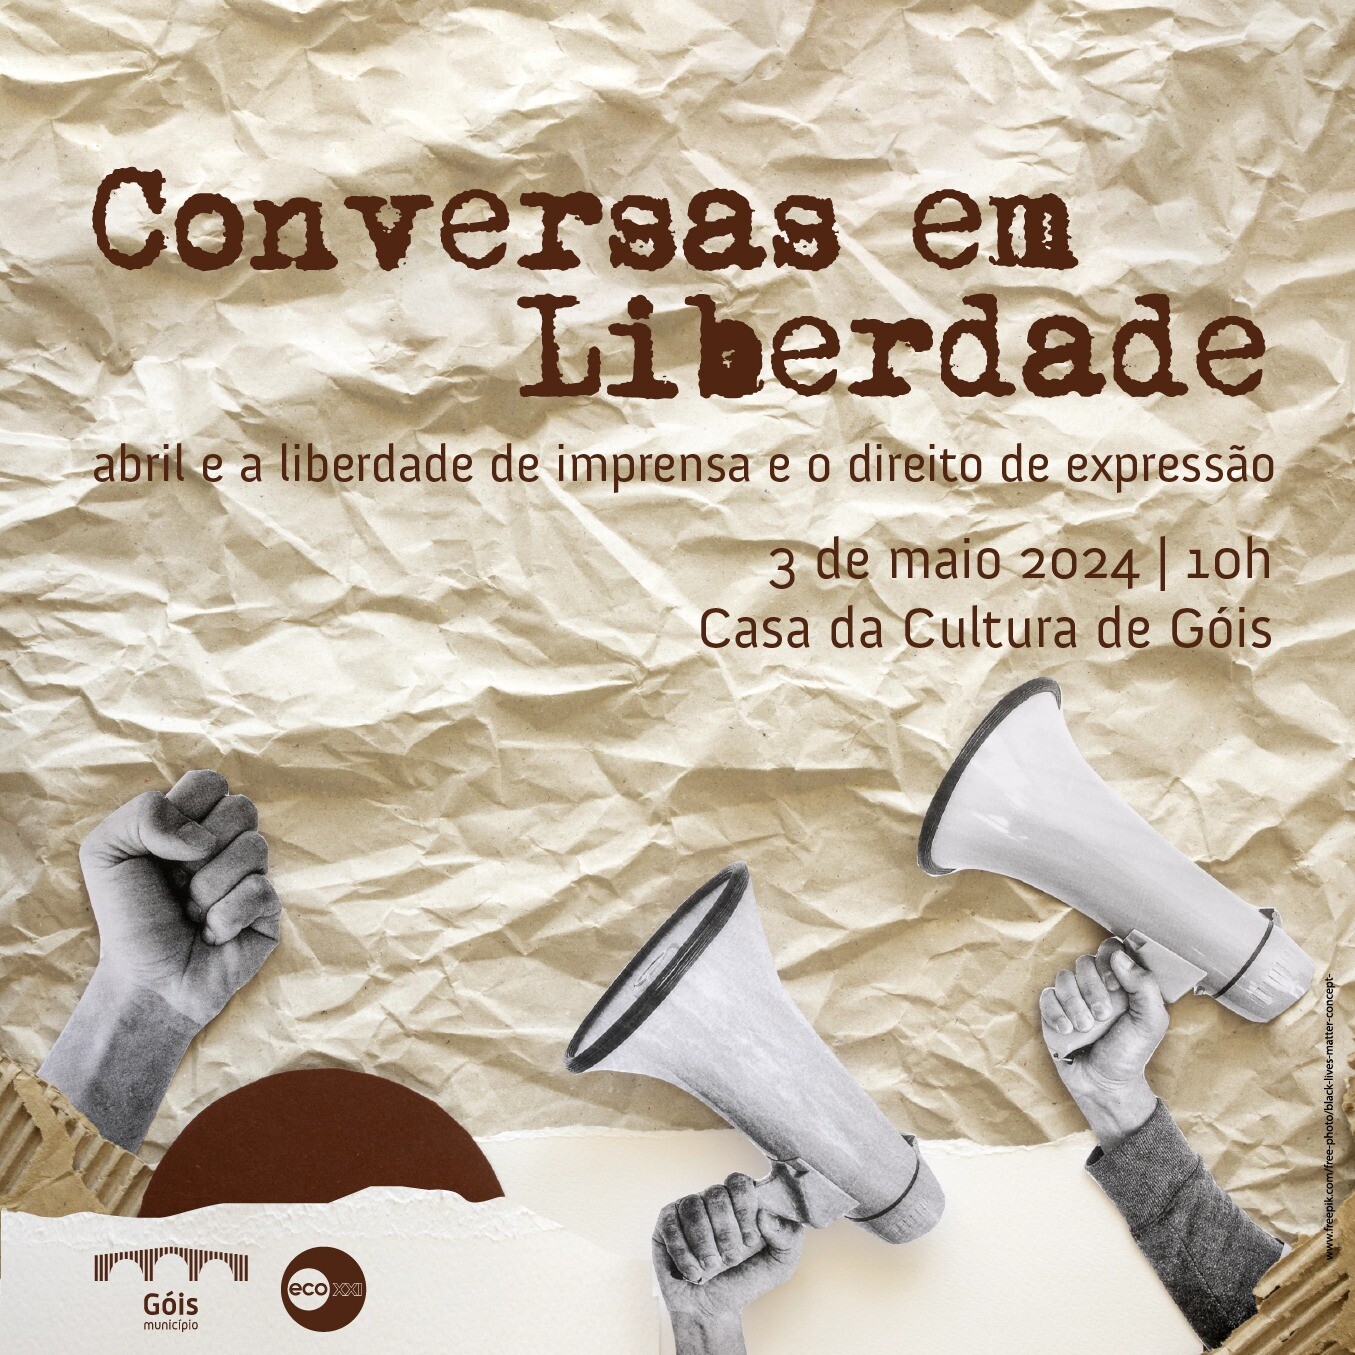 Capa do Evento Conversa(s) em Liberdade: 'Abril e a Liberdade de Imprensa e o Direito de Expressão'